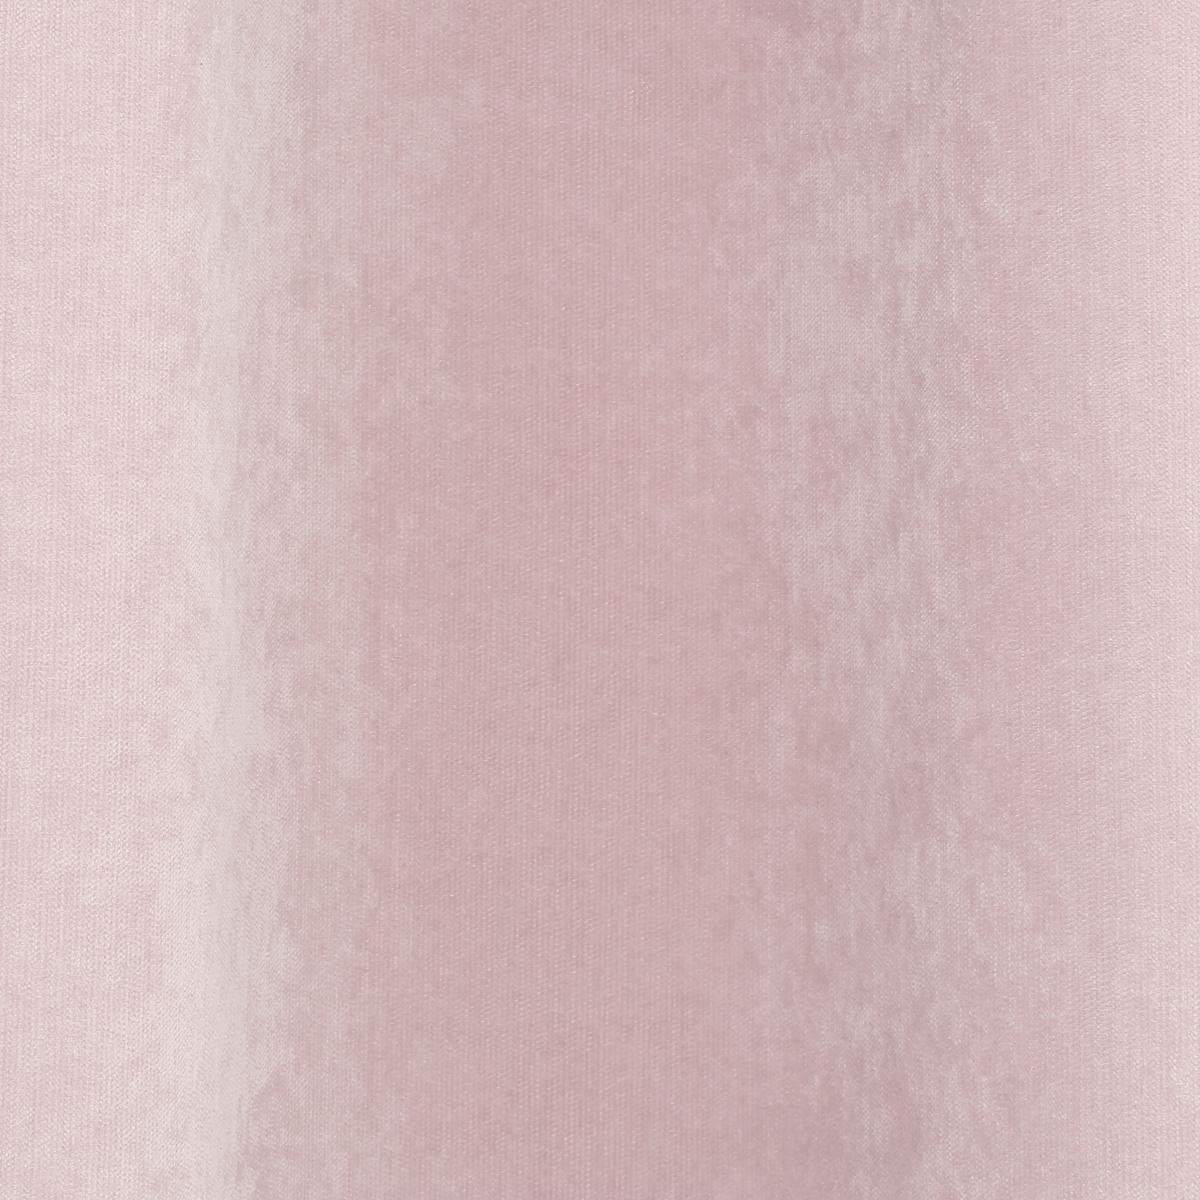 Atmosphera Memories gordijnen Roze 140 x 260 cm - Kant en klaar met ringen - Gordijn raambekleding €“ Roze